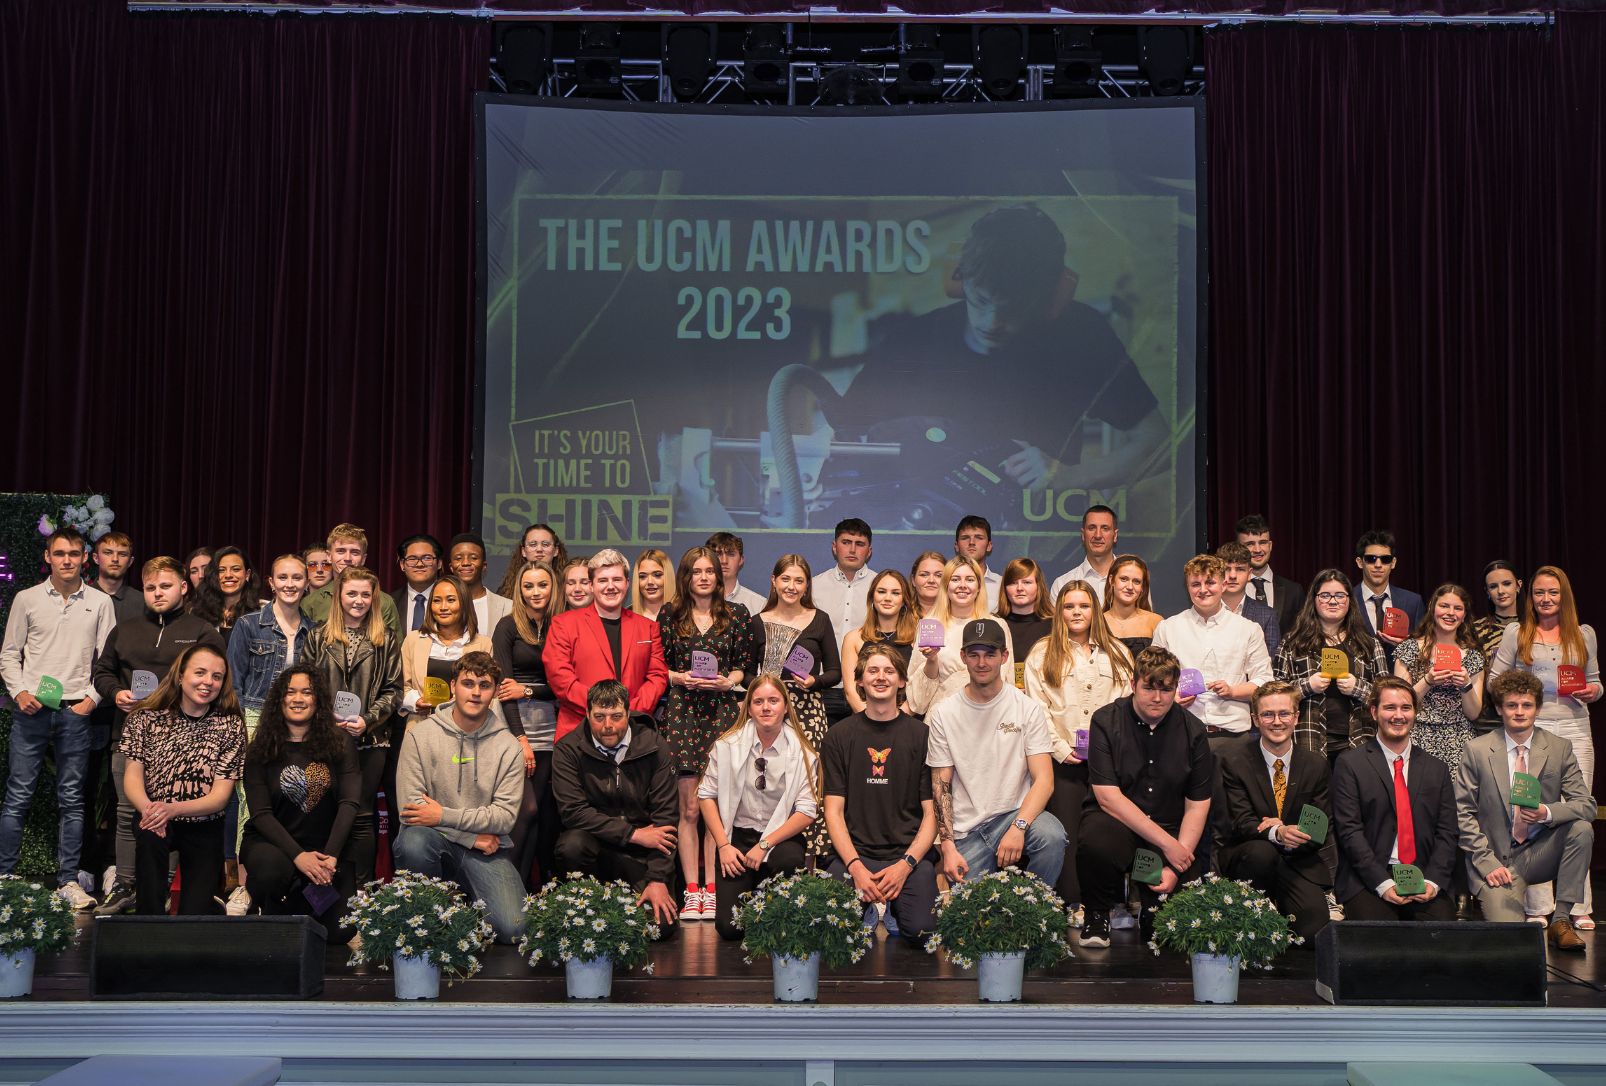 UCM Awards Web Image